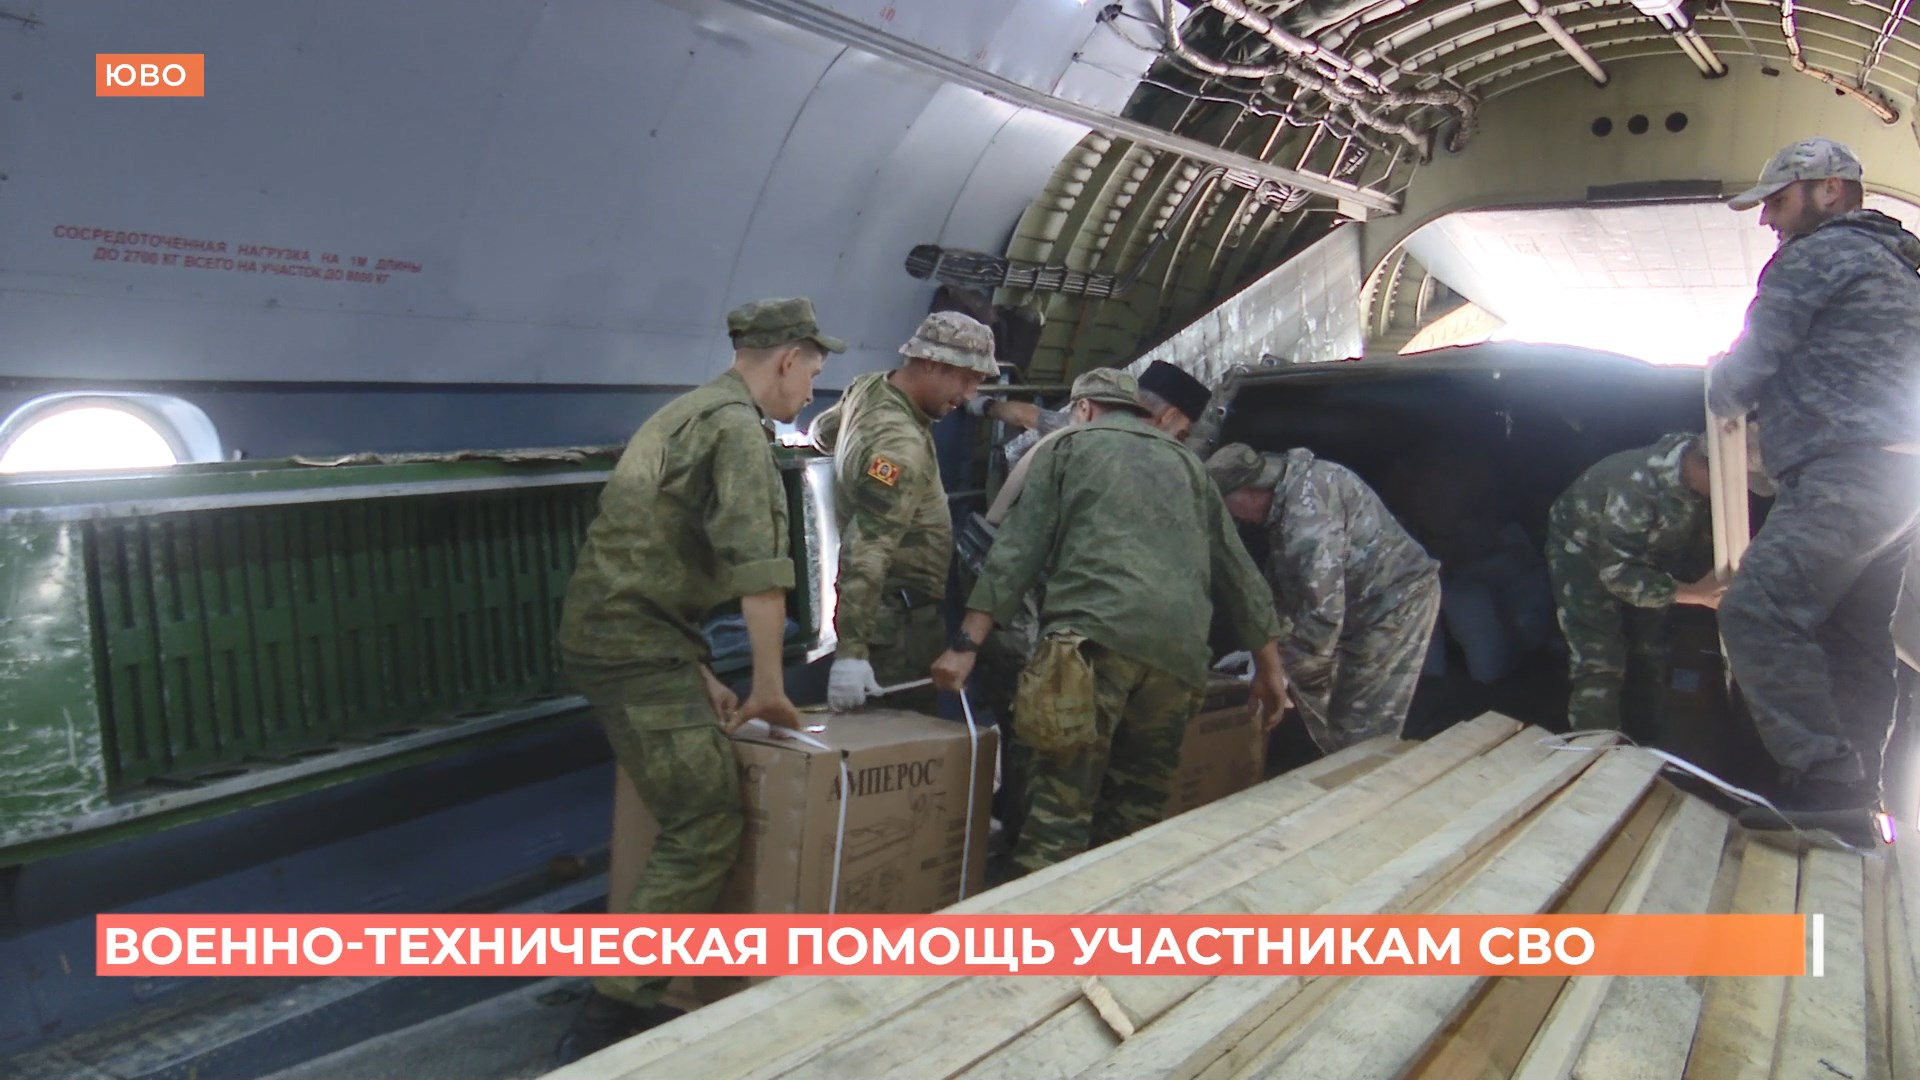 Партию военно-технической помощи от Ростовской области получили участники СВО